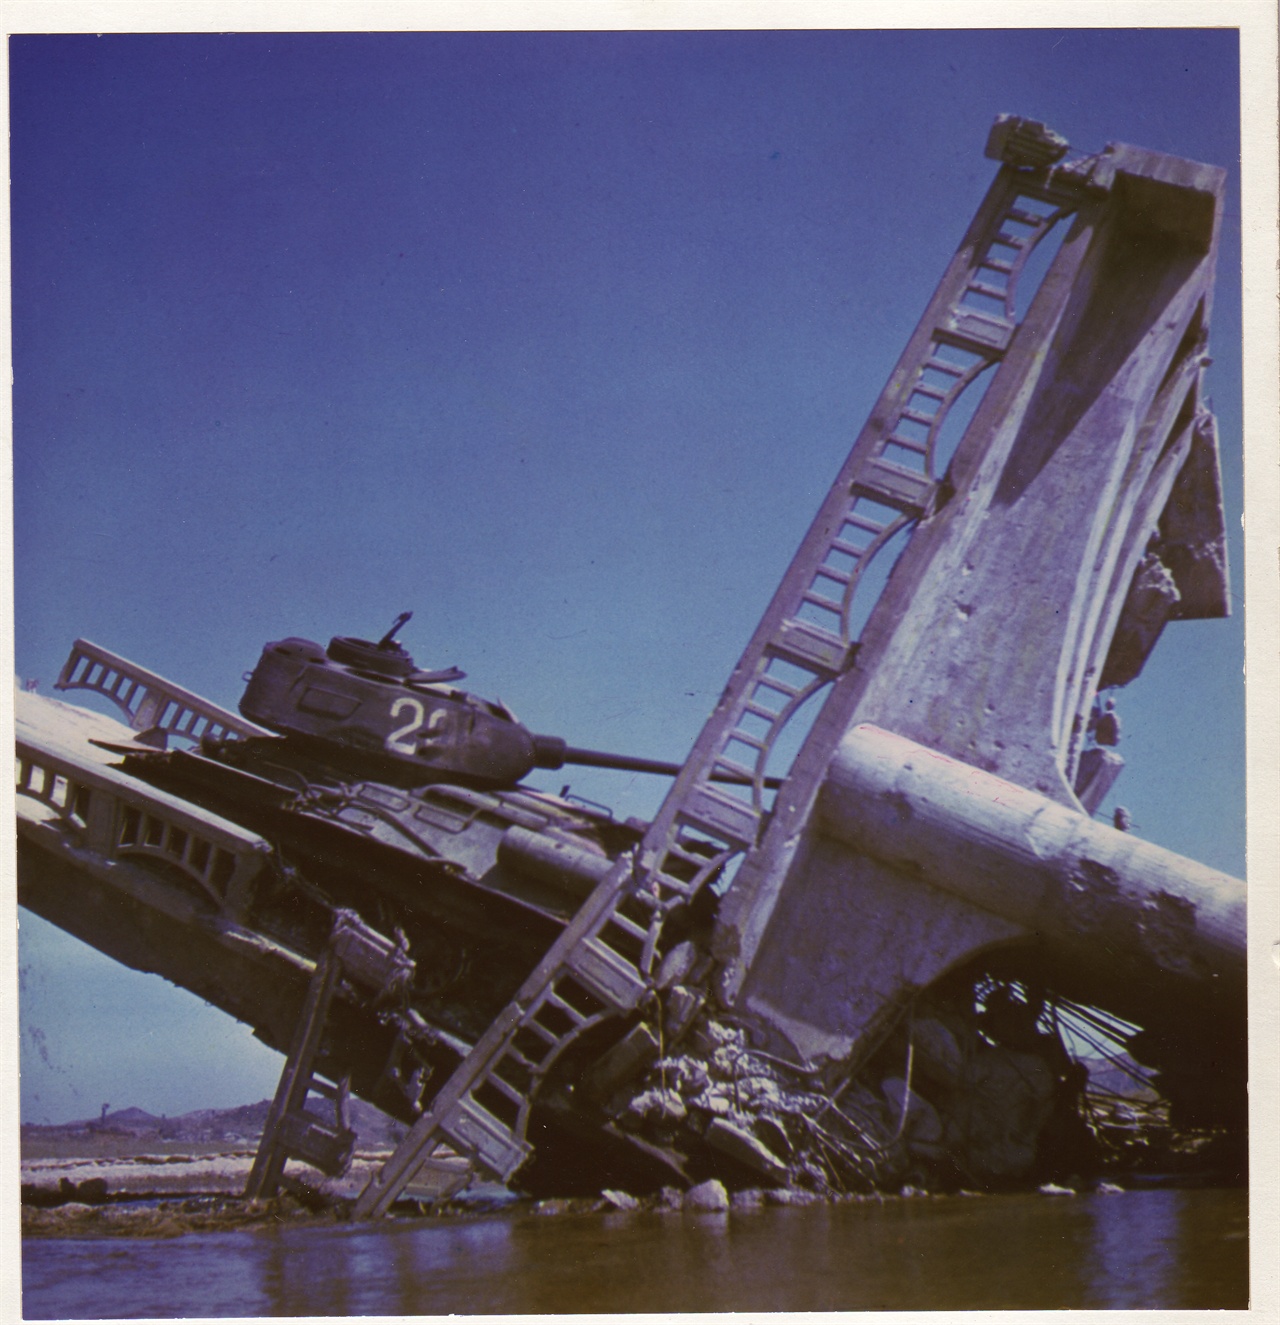  1950. 10. 7. 수원. 부서진 다리 위에 파괴된 인민군 탱크